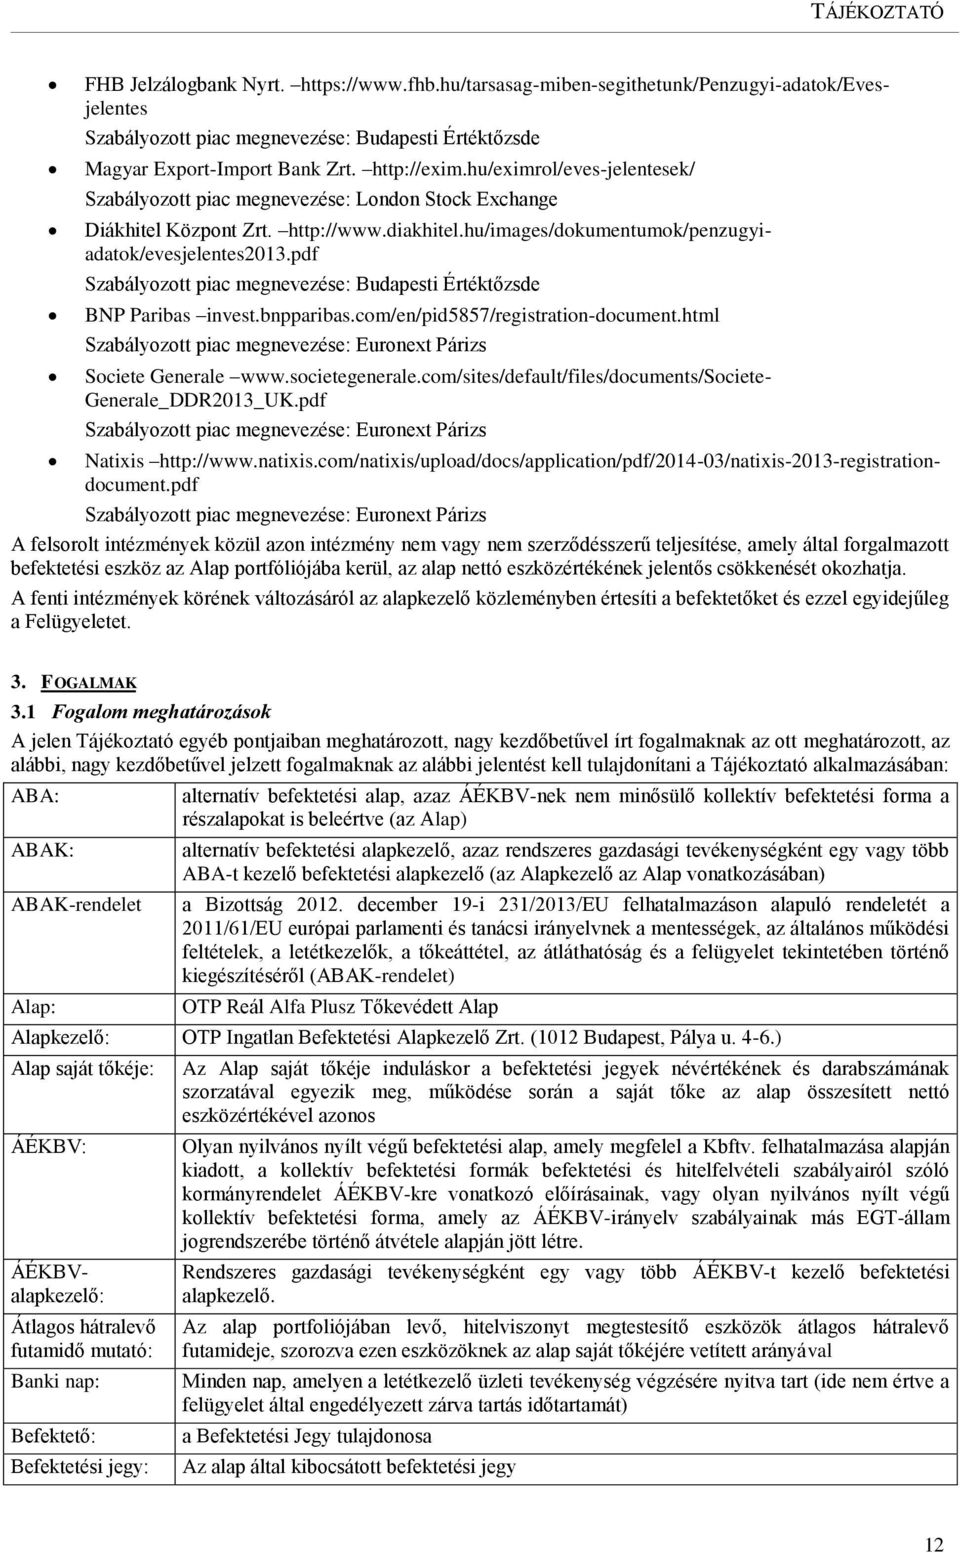 pdf Szabályozott piac megnevezése: Budapesti Értéktőzsde BNP Paribas invest.bnpparibas.com/en/pid5857/registration-document.html Szabályozott piac megnevezése: Euronext Párizs Societe Generale www.